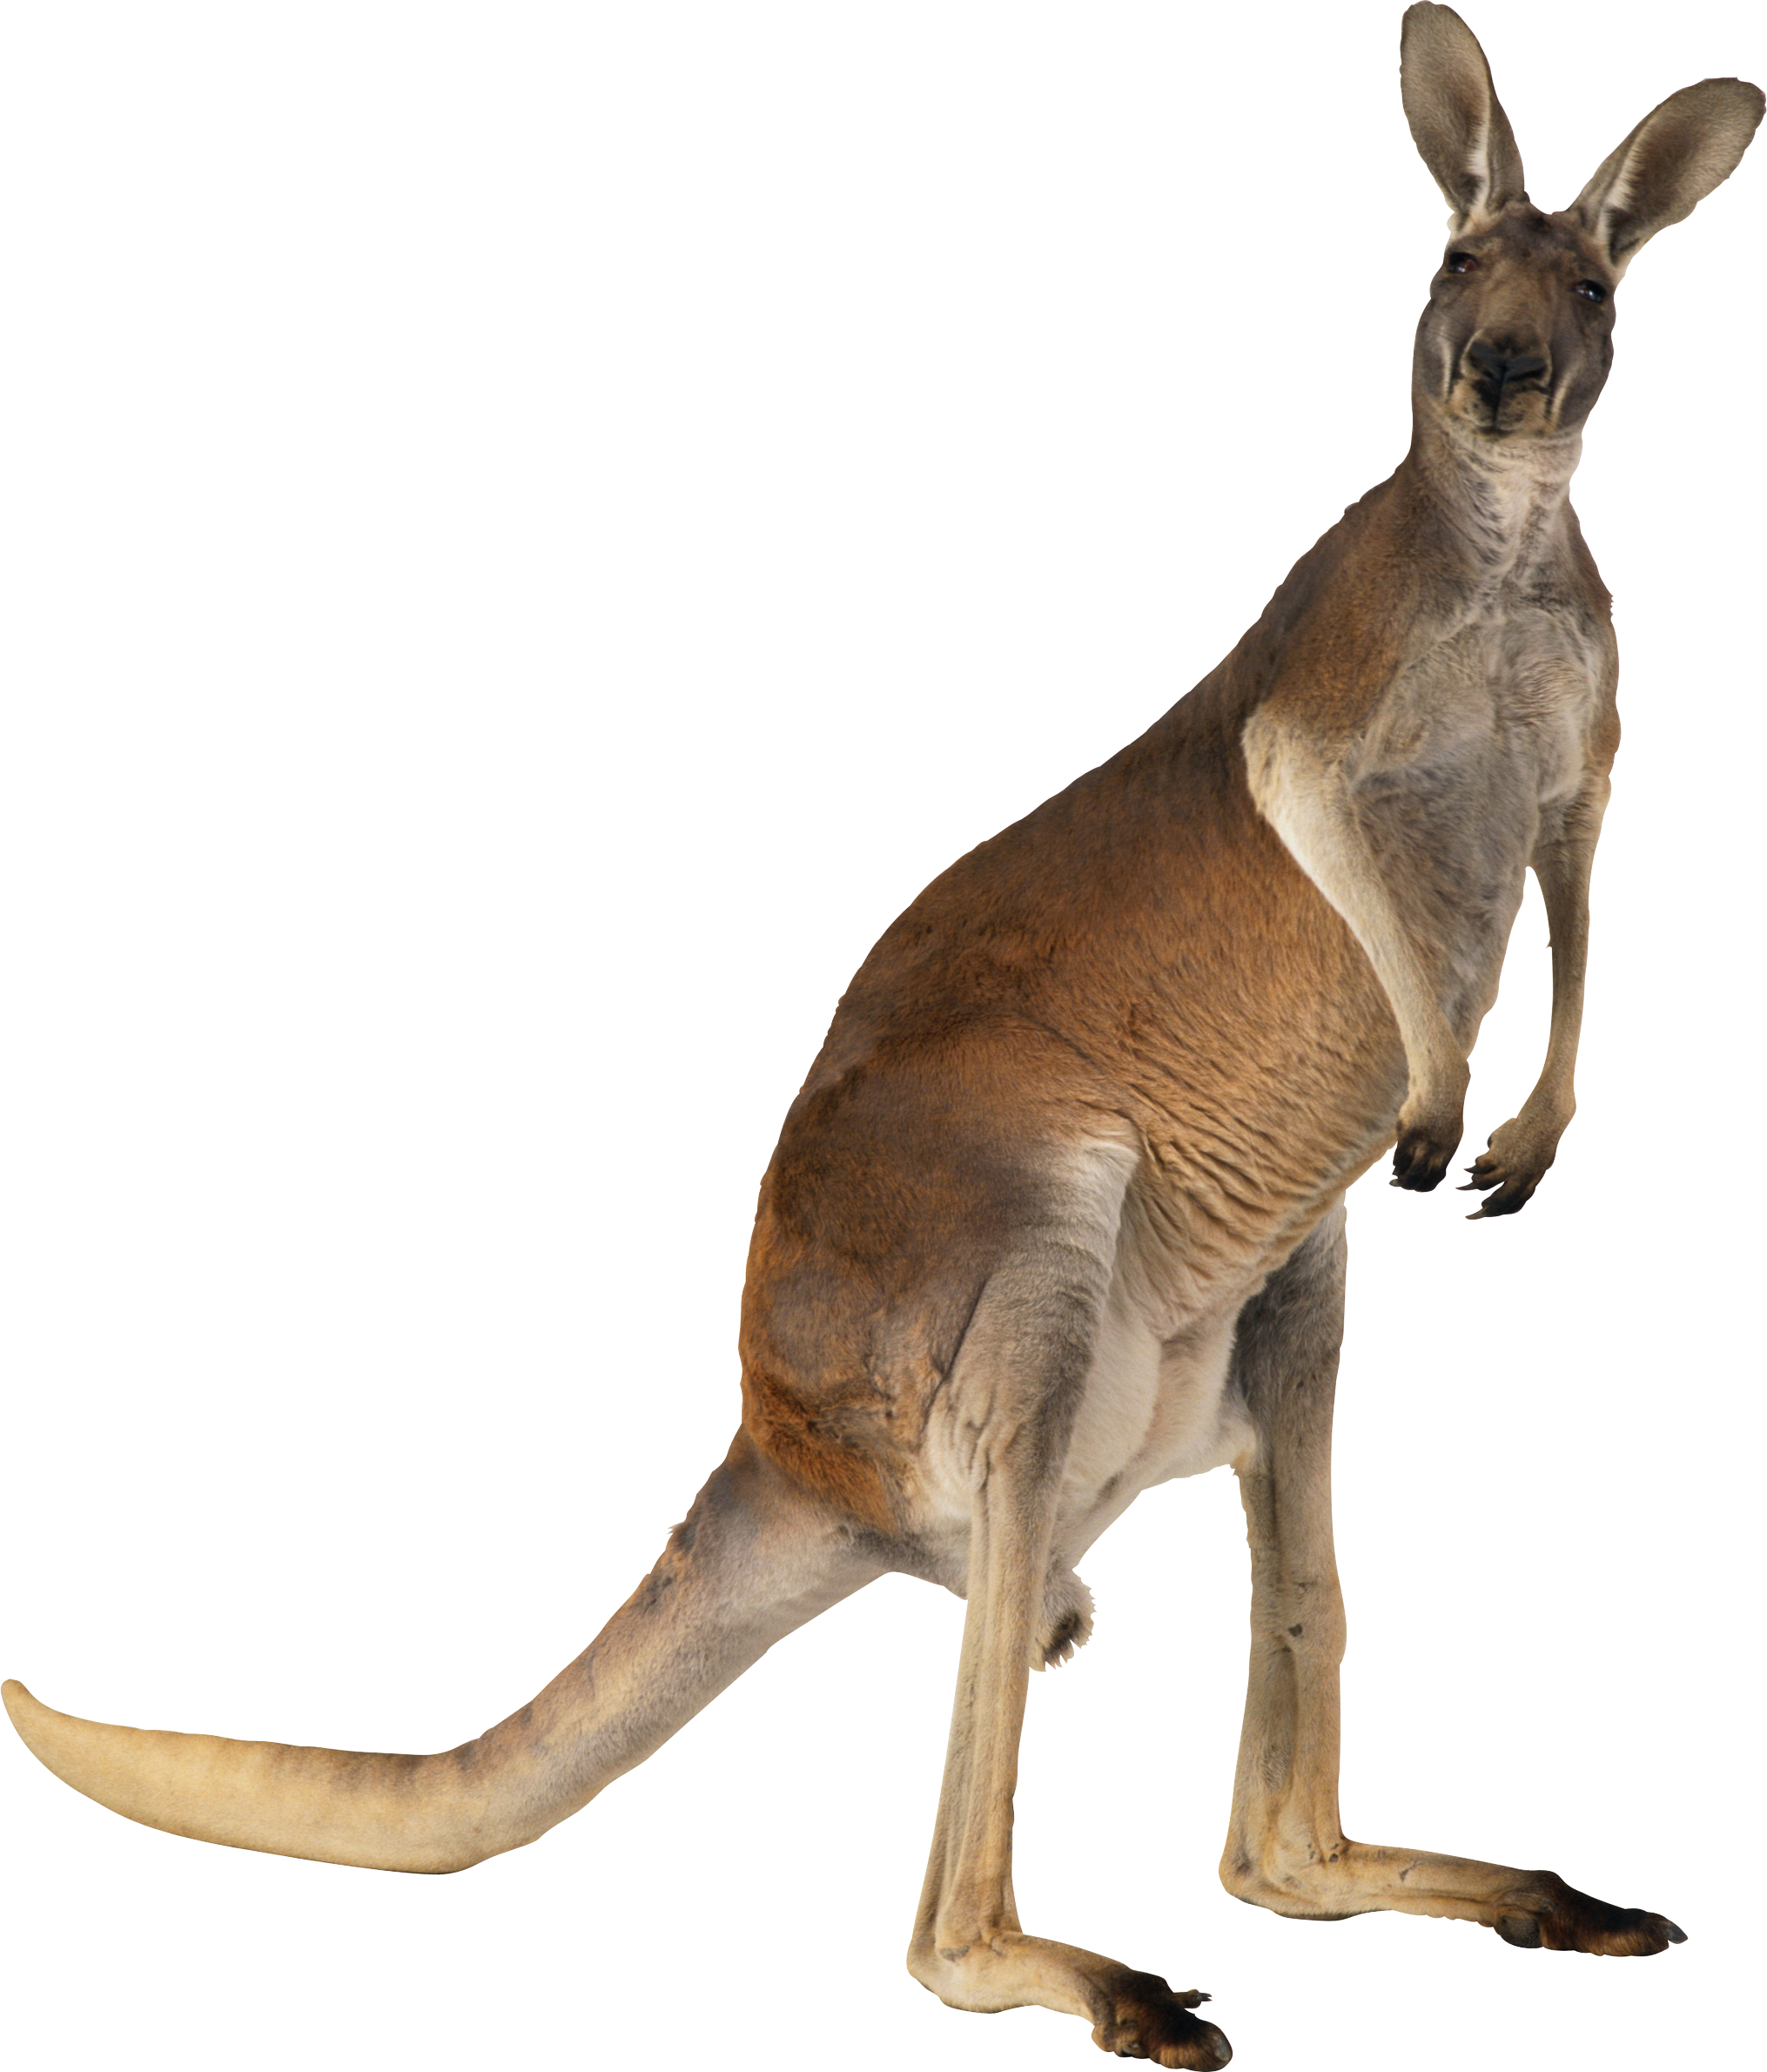 Kanguru